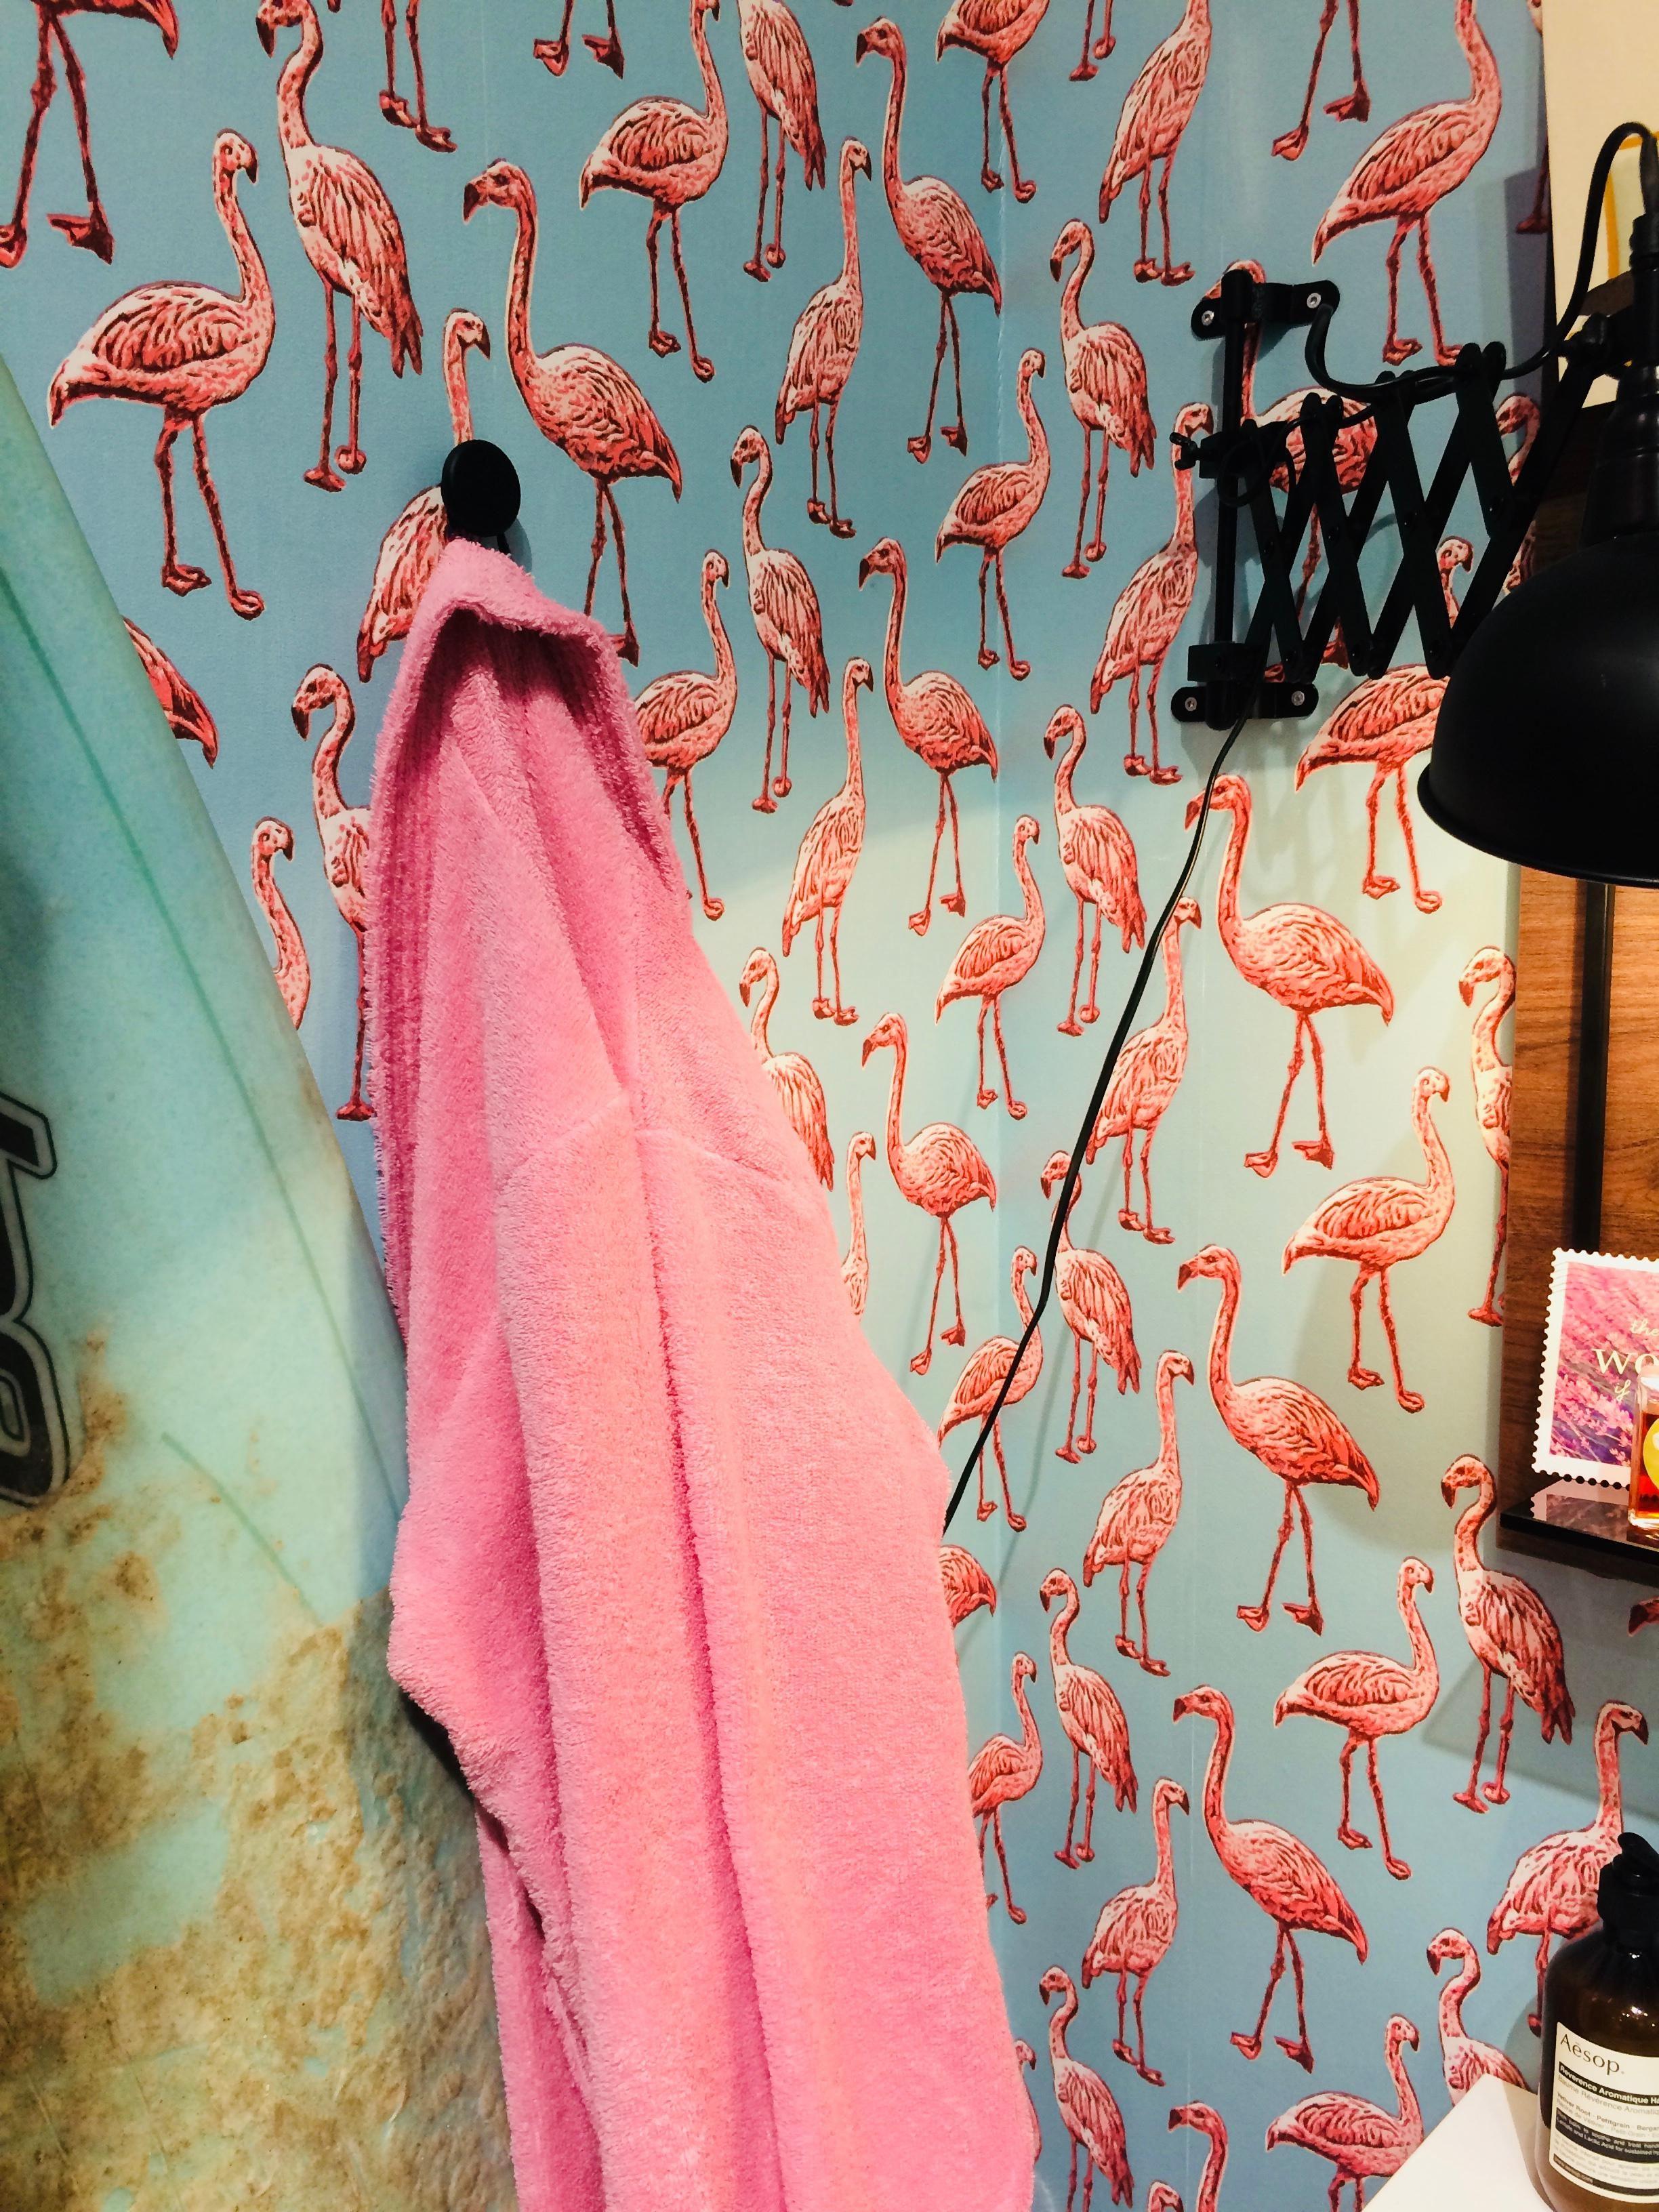 Gegen den #winterblues hilft definitiv diese Tapete 😉 Letzte Woche auf der #imm2018 gespottet. #flamingo #tapete #rosa